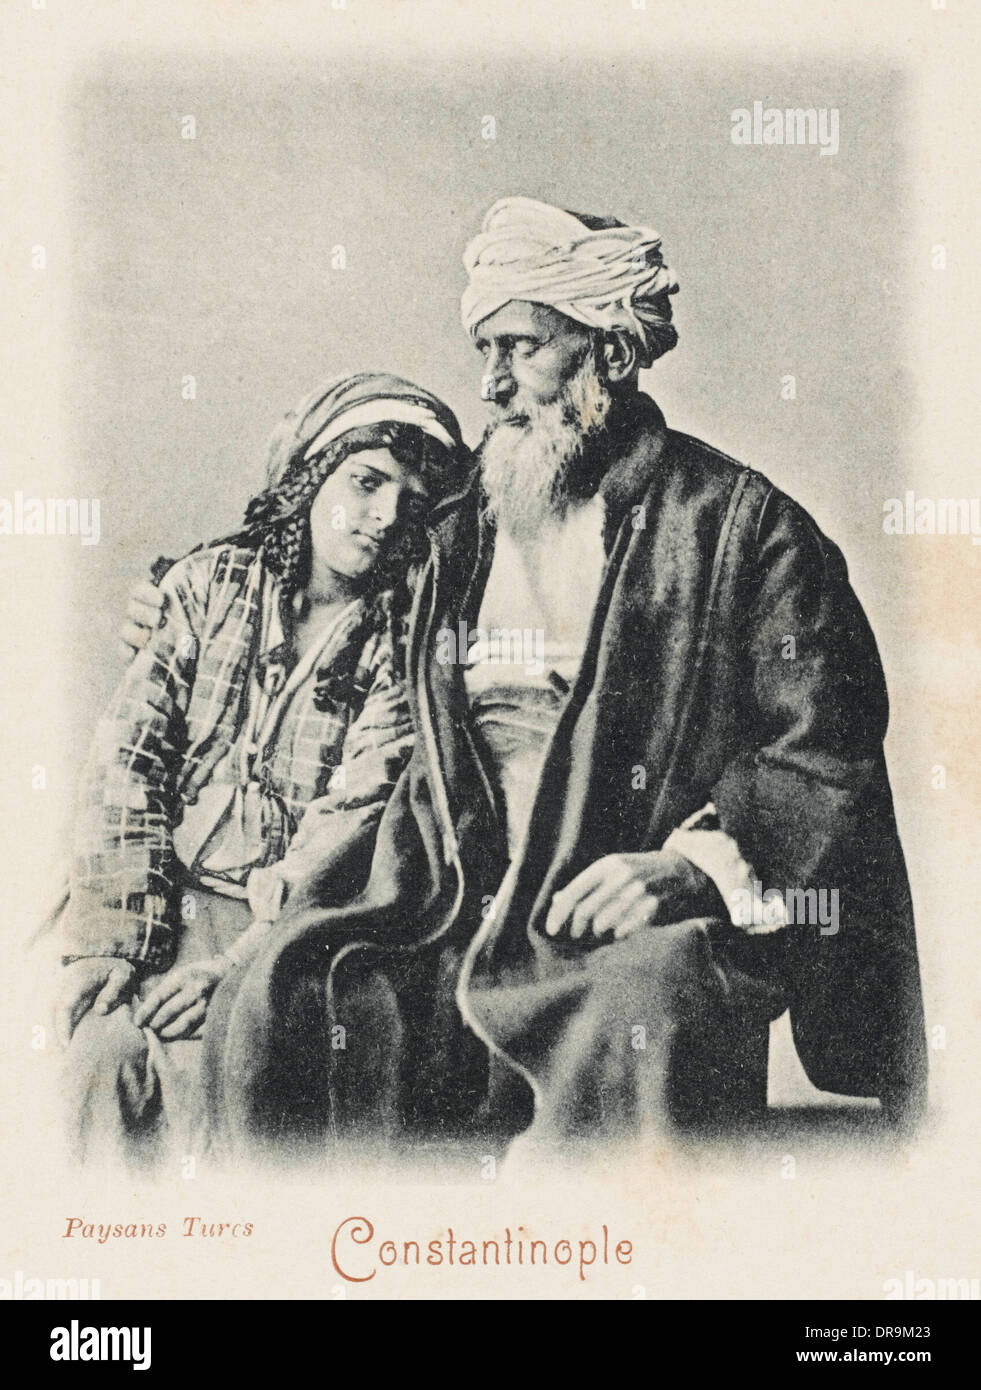 Con su hija de campesinos turcos Foto de stock